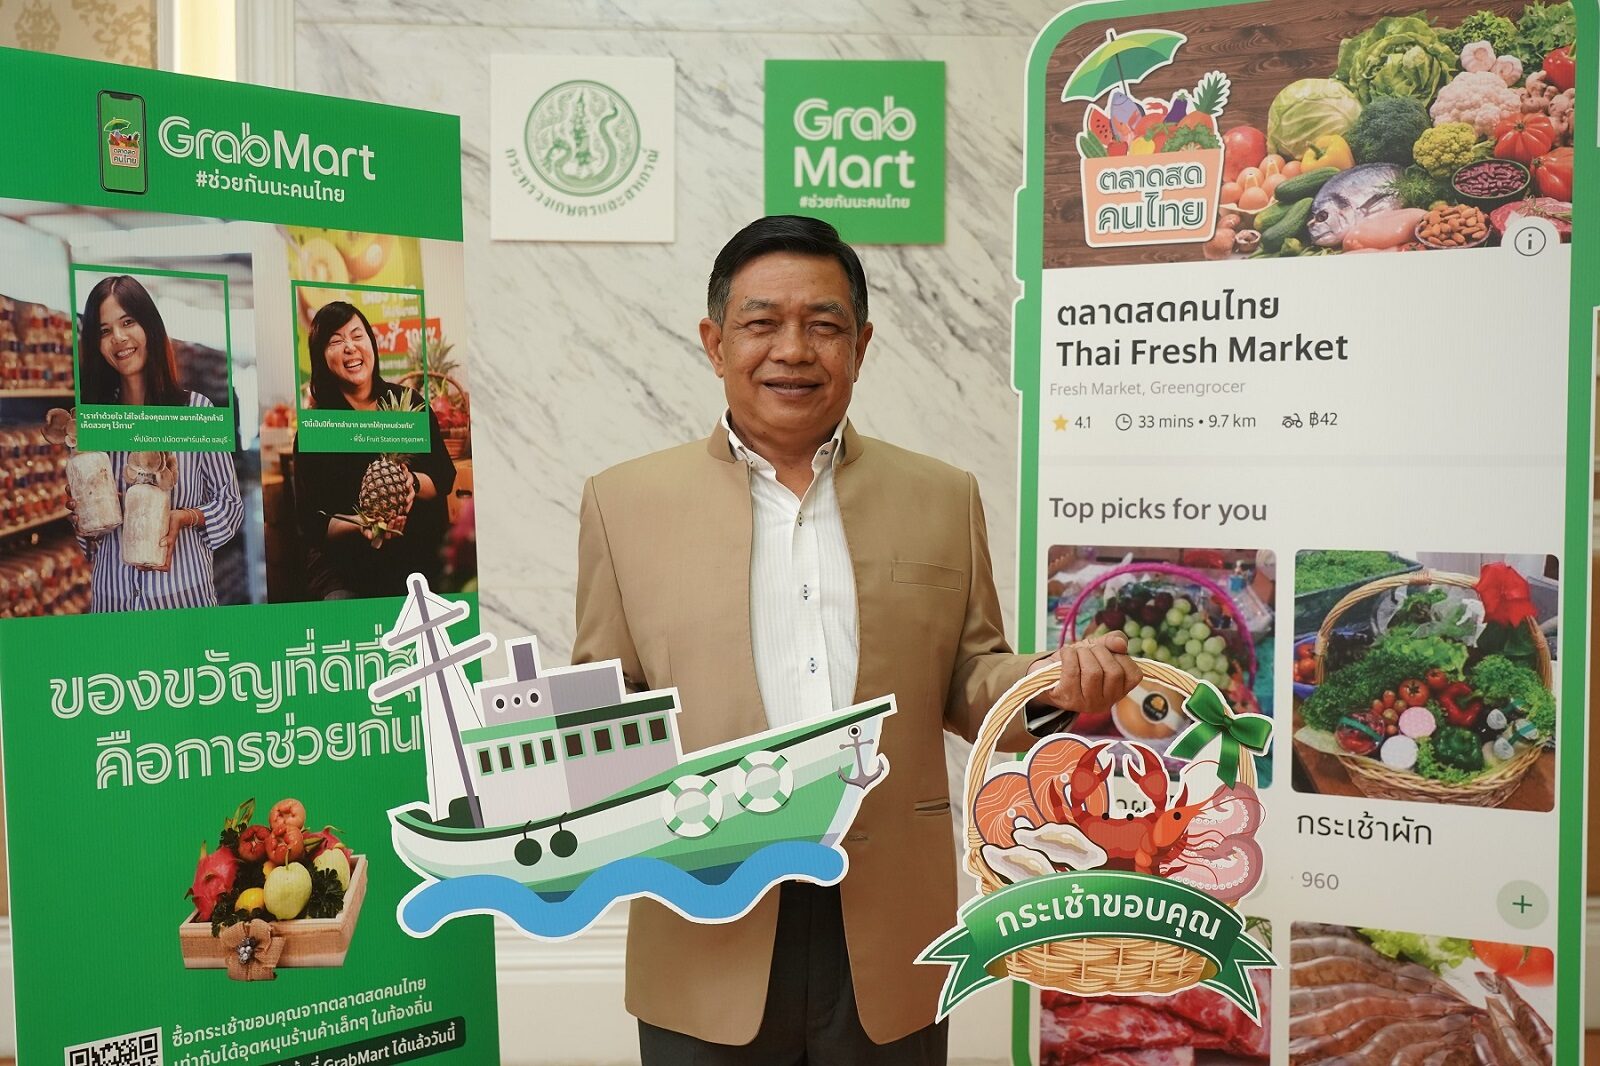 "แกร็บ" จับมือ "ก.เกษตร" เปิดตัว ตลาดสดคนไทยผ่าน GrabMart